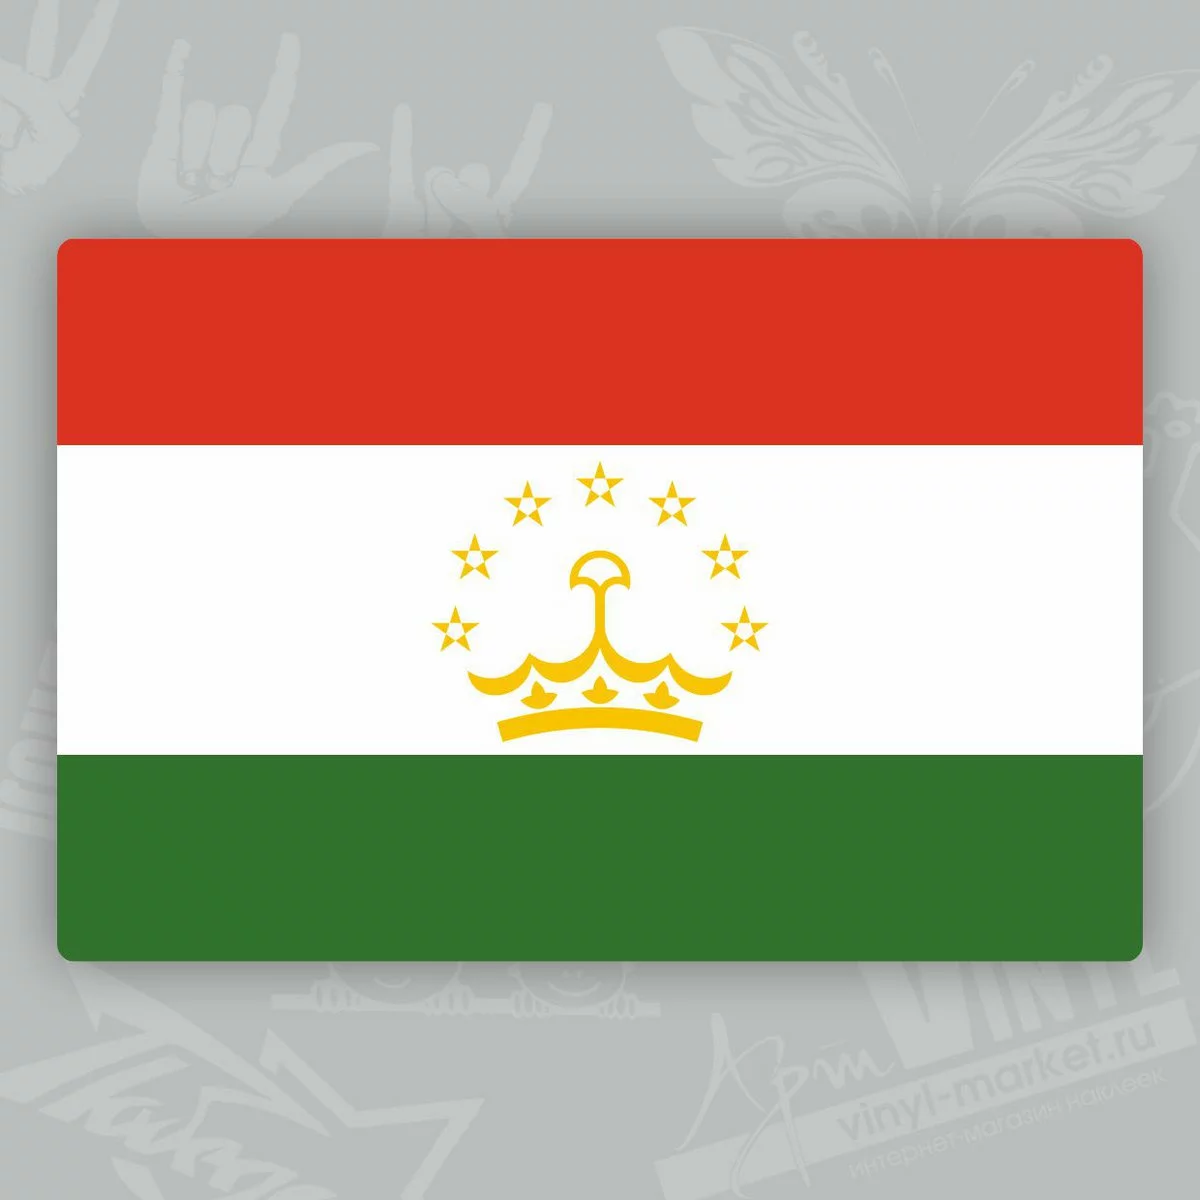 Стоковые фотографии по запросу Tajikistan flag